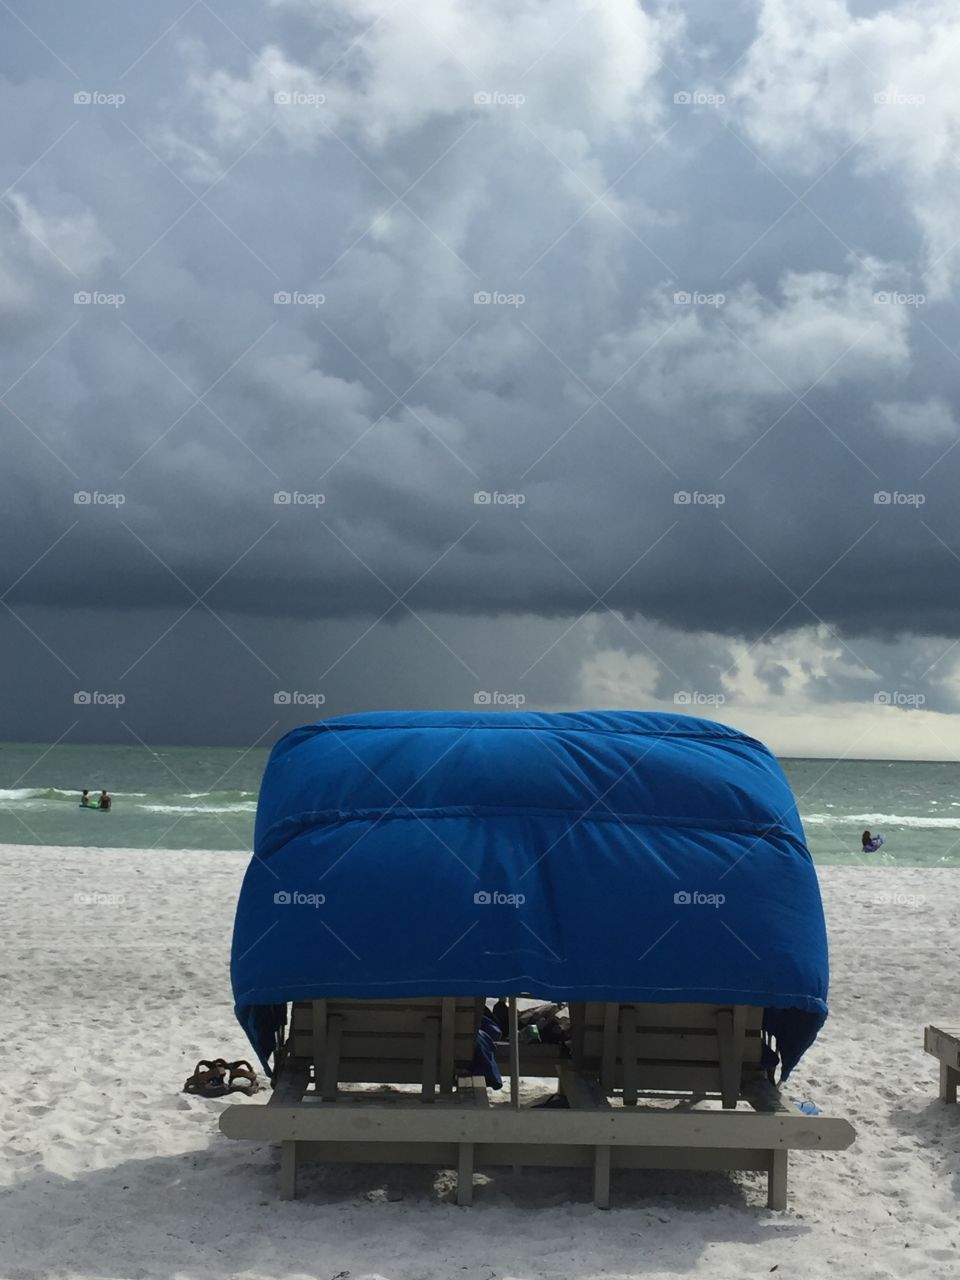 Florida skies storm clouds Cabana